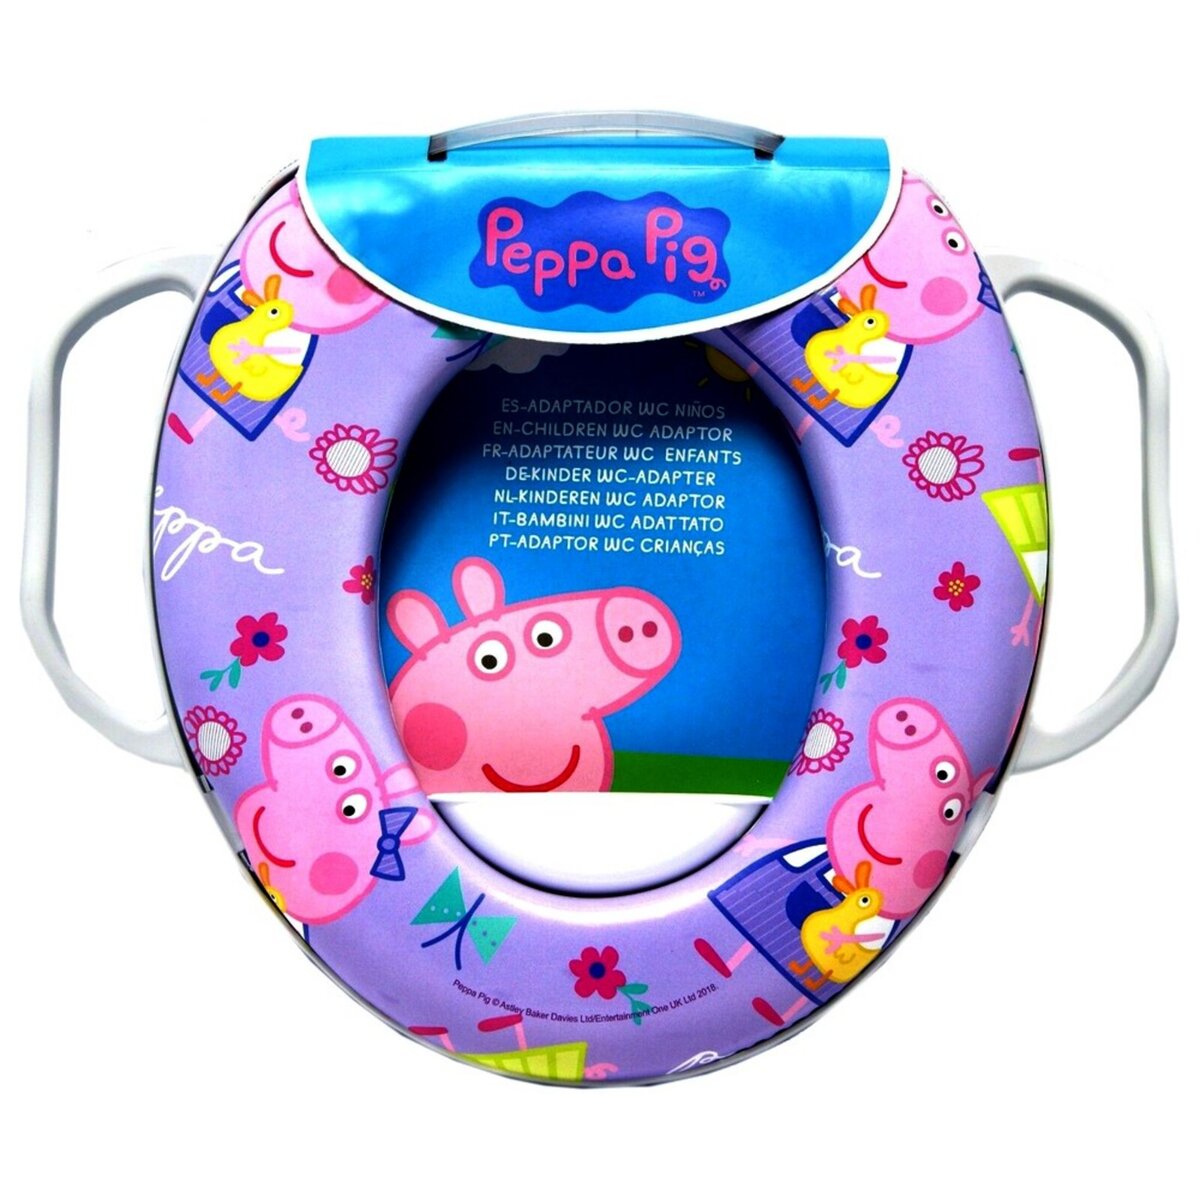 Reducteur de toilette Peppa Pig siege WC enfant pas cher 